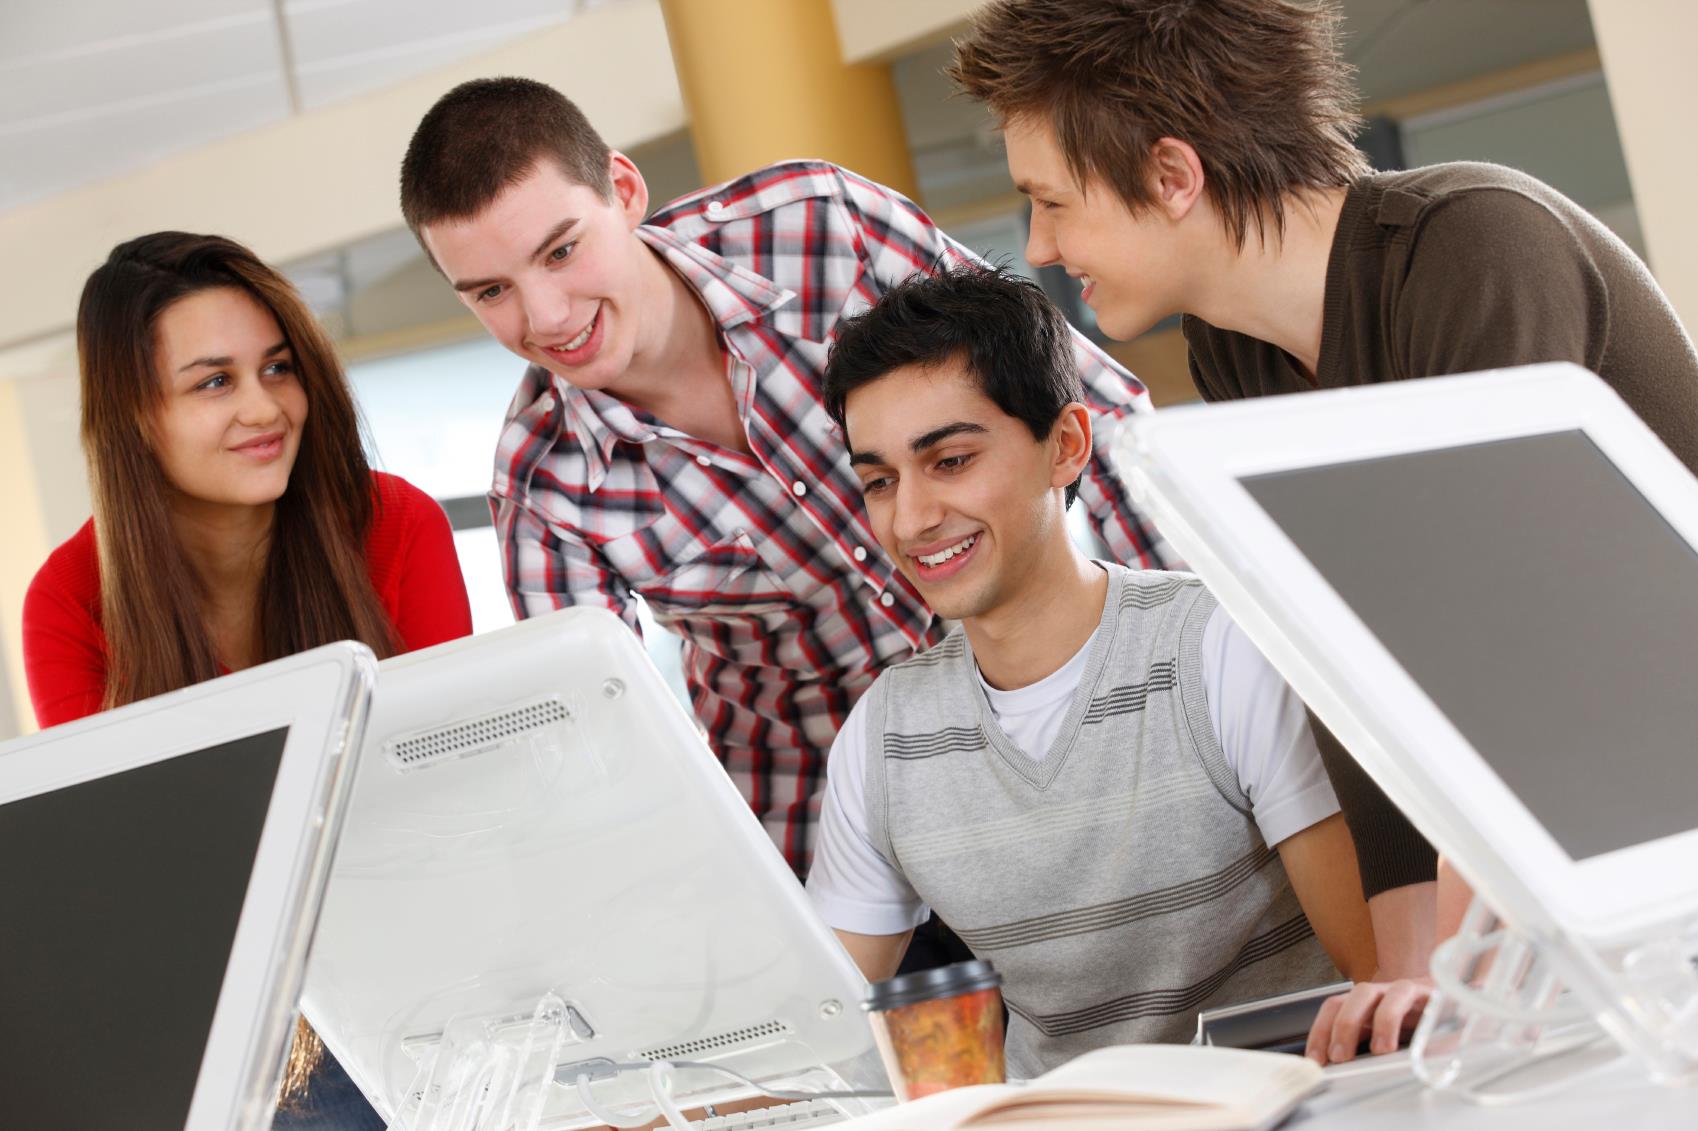 Ис студент. Современный студент. Студент сидит за компьютером. Студенты и технологии. Студенты и компьютерные технологии.